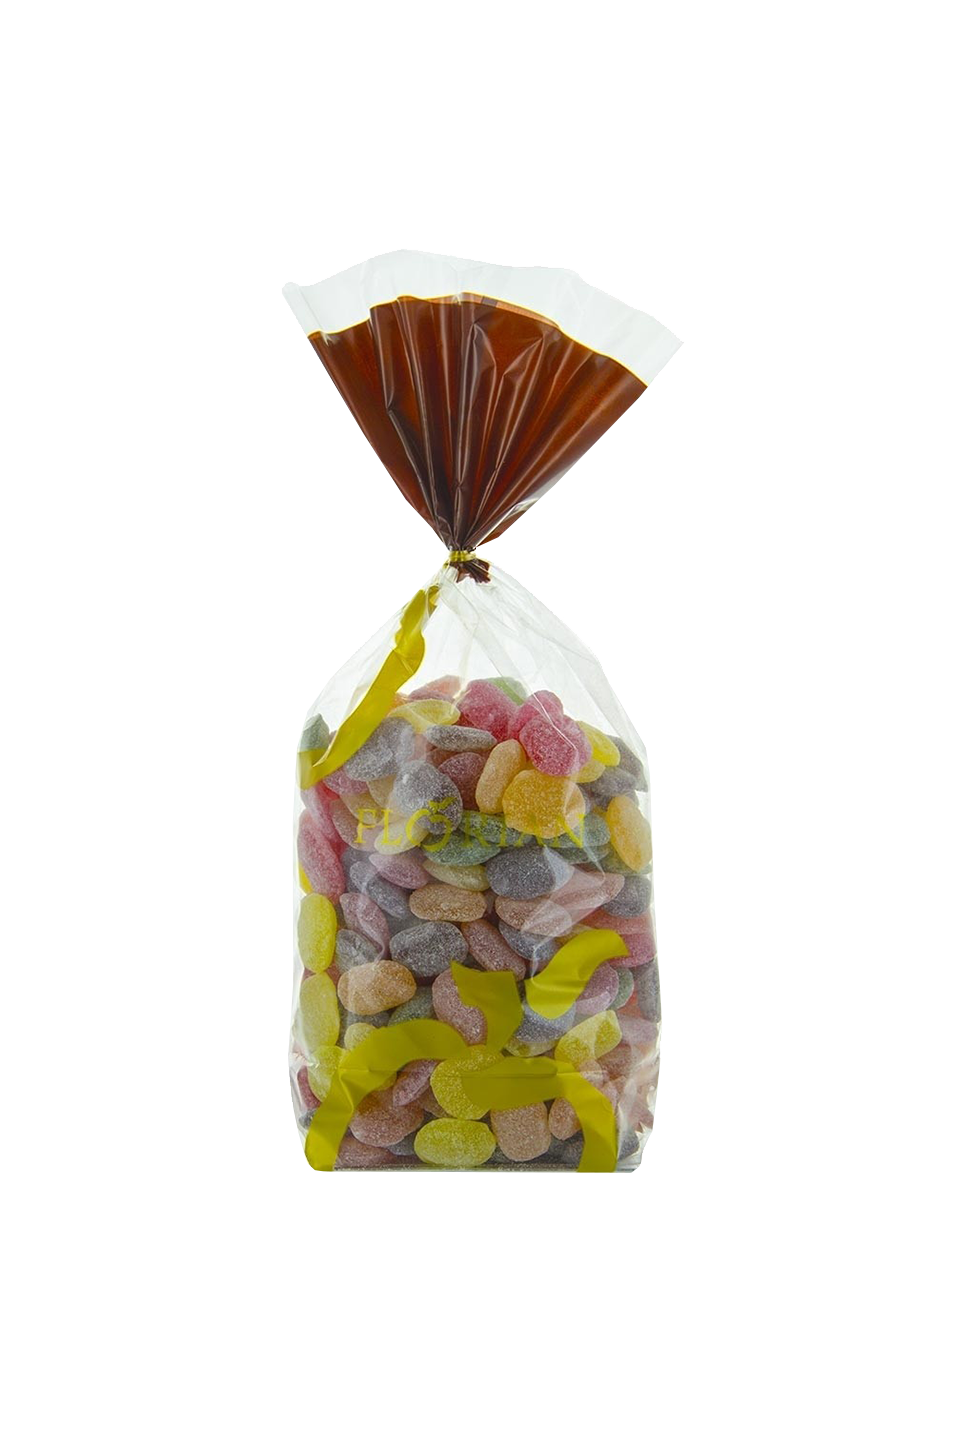 Kilo de bonbons acidulés assortis - Confiserie Florian